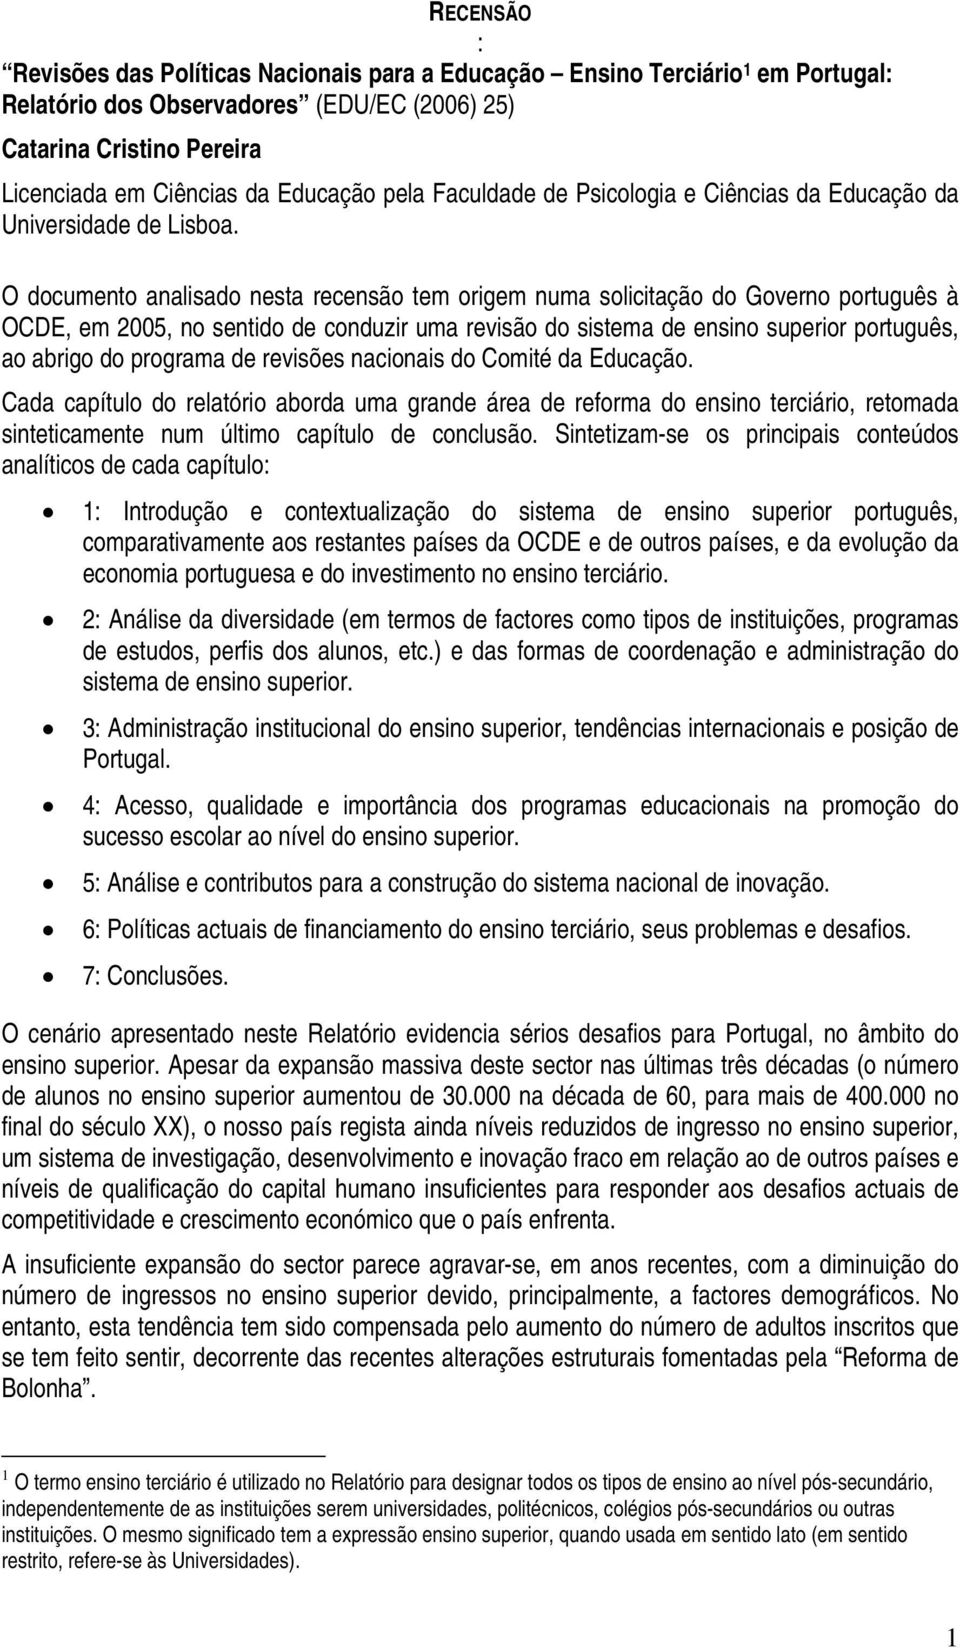 O documento analisado nesta recensão tem origem numa solicitação do Governo português à OCDE, em 2005, no sentido de conduzir uma revisão do sistema de ensino superior português, ao abrigo do